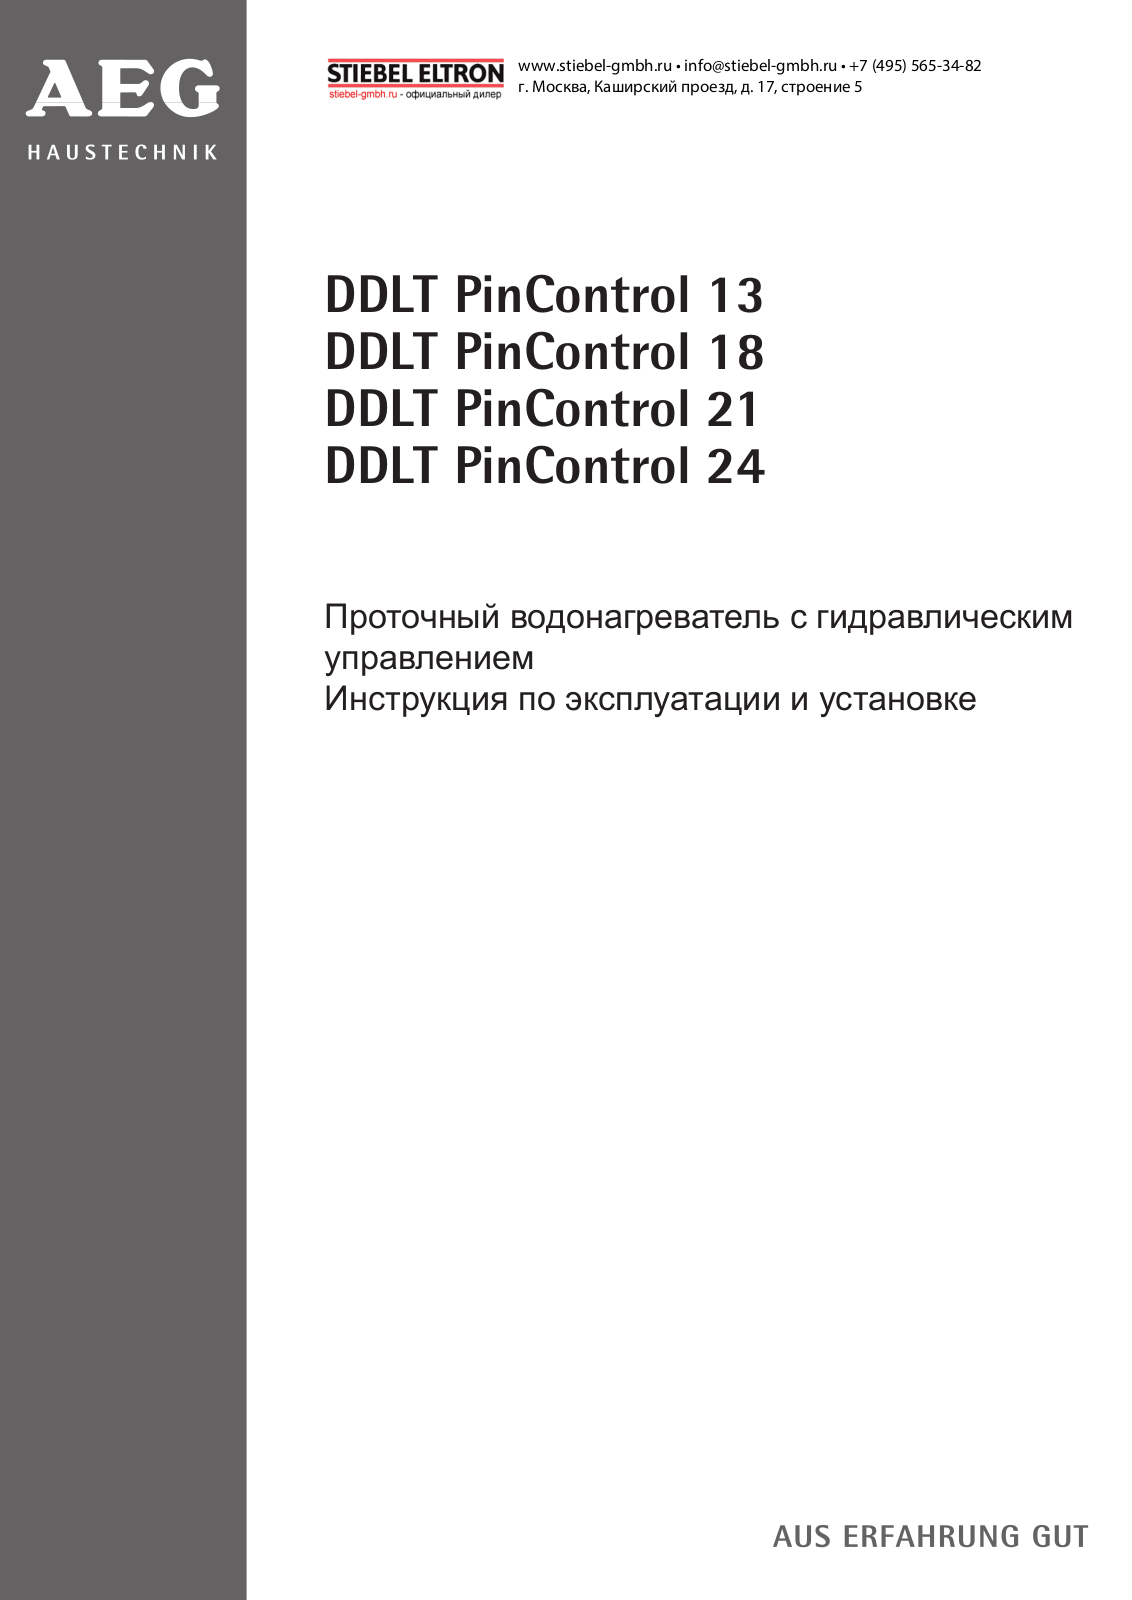 Aeg DDLT PinControl 18 User Manual